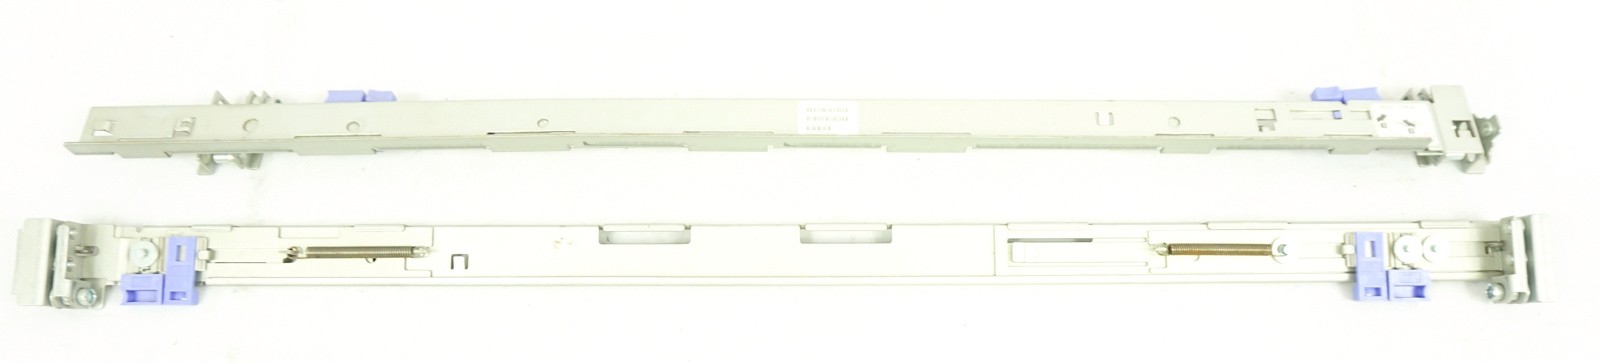 IBM X325, X330, X335 Rail Kit